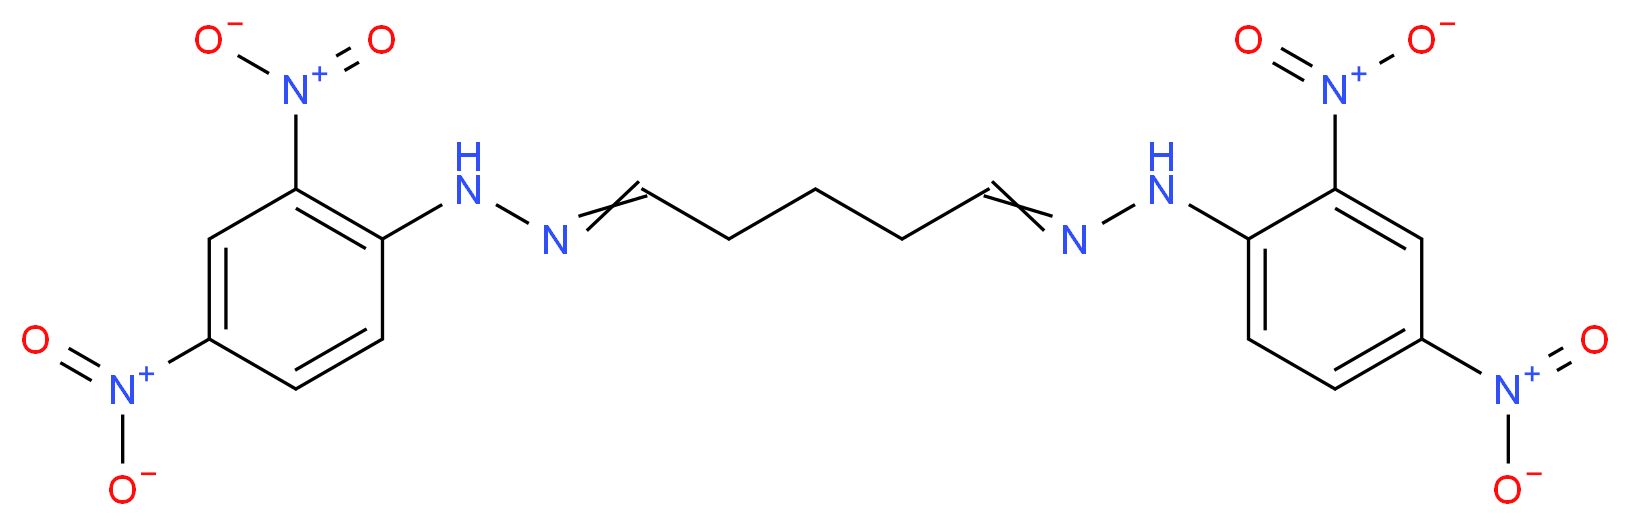 Glutaraldehyde bis(2,4-dinitrophenylhydrazone)_Molecular_structure_CAS_5085-07-4)